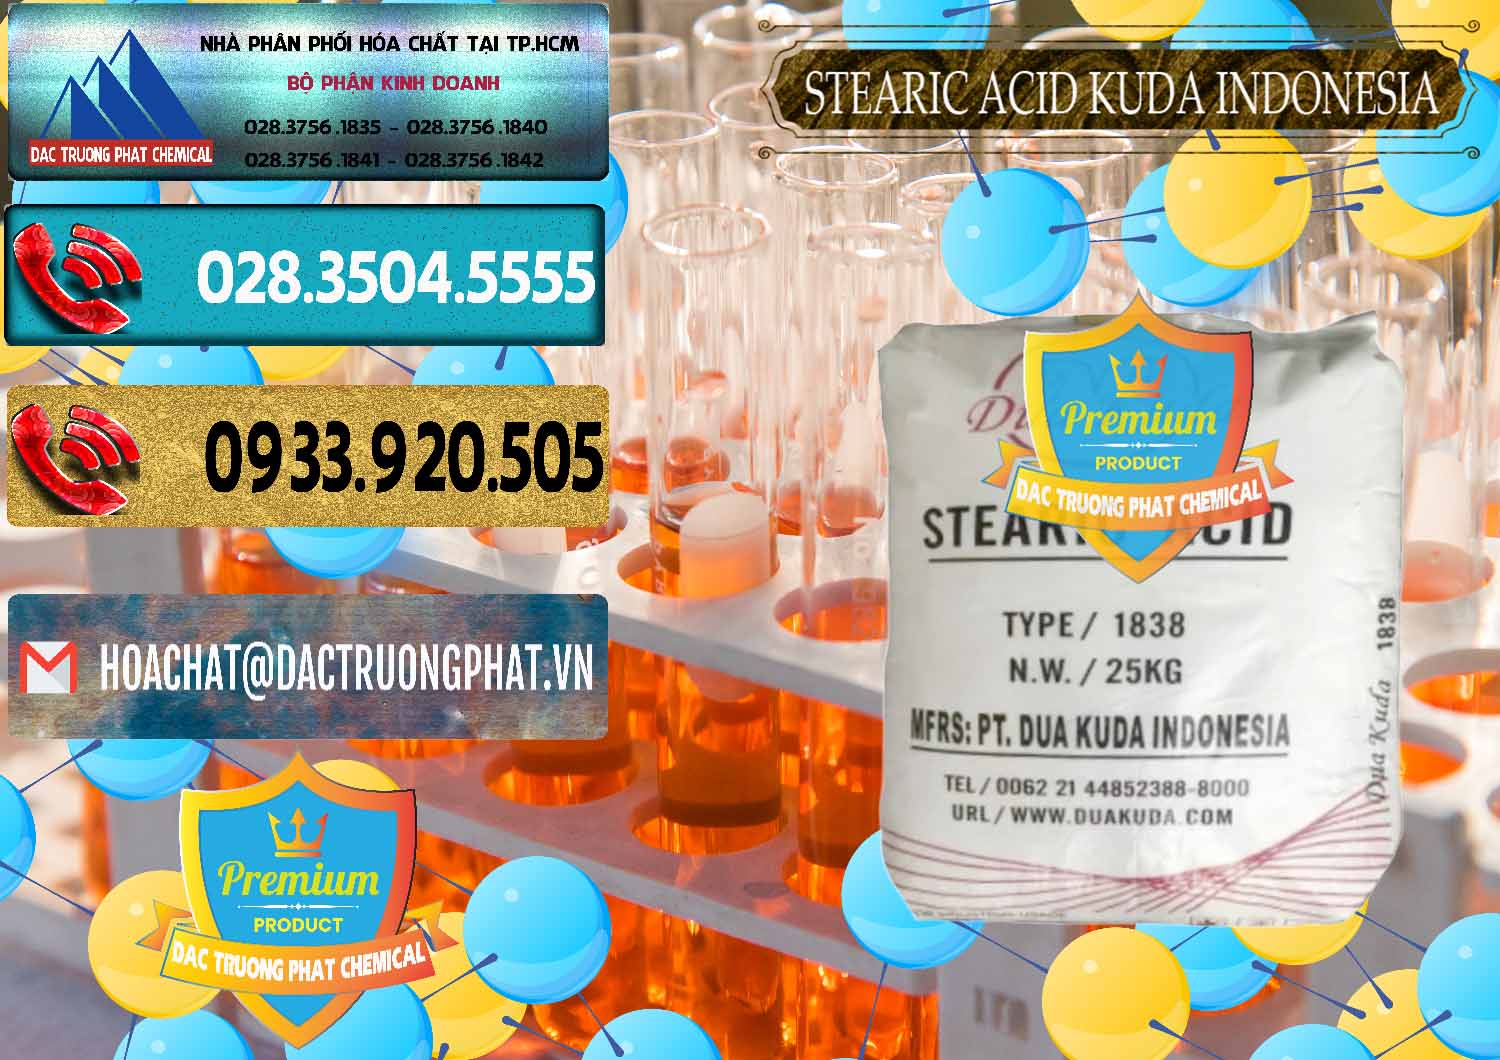 Cty chuyên kinh doanh và bán Axit Stearic - Stearic Acid Dua Kuda Indonesia - 0388 - Cty chuyên bán _ cung cấp hóa chất tại TP.HCM - hoachatdetnhuom.com